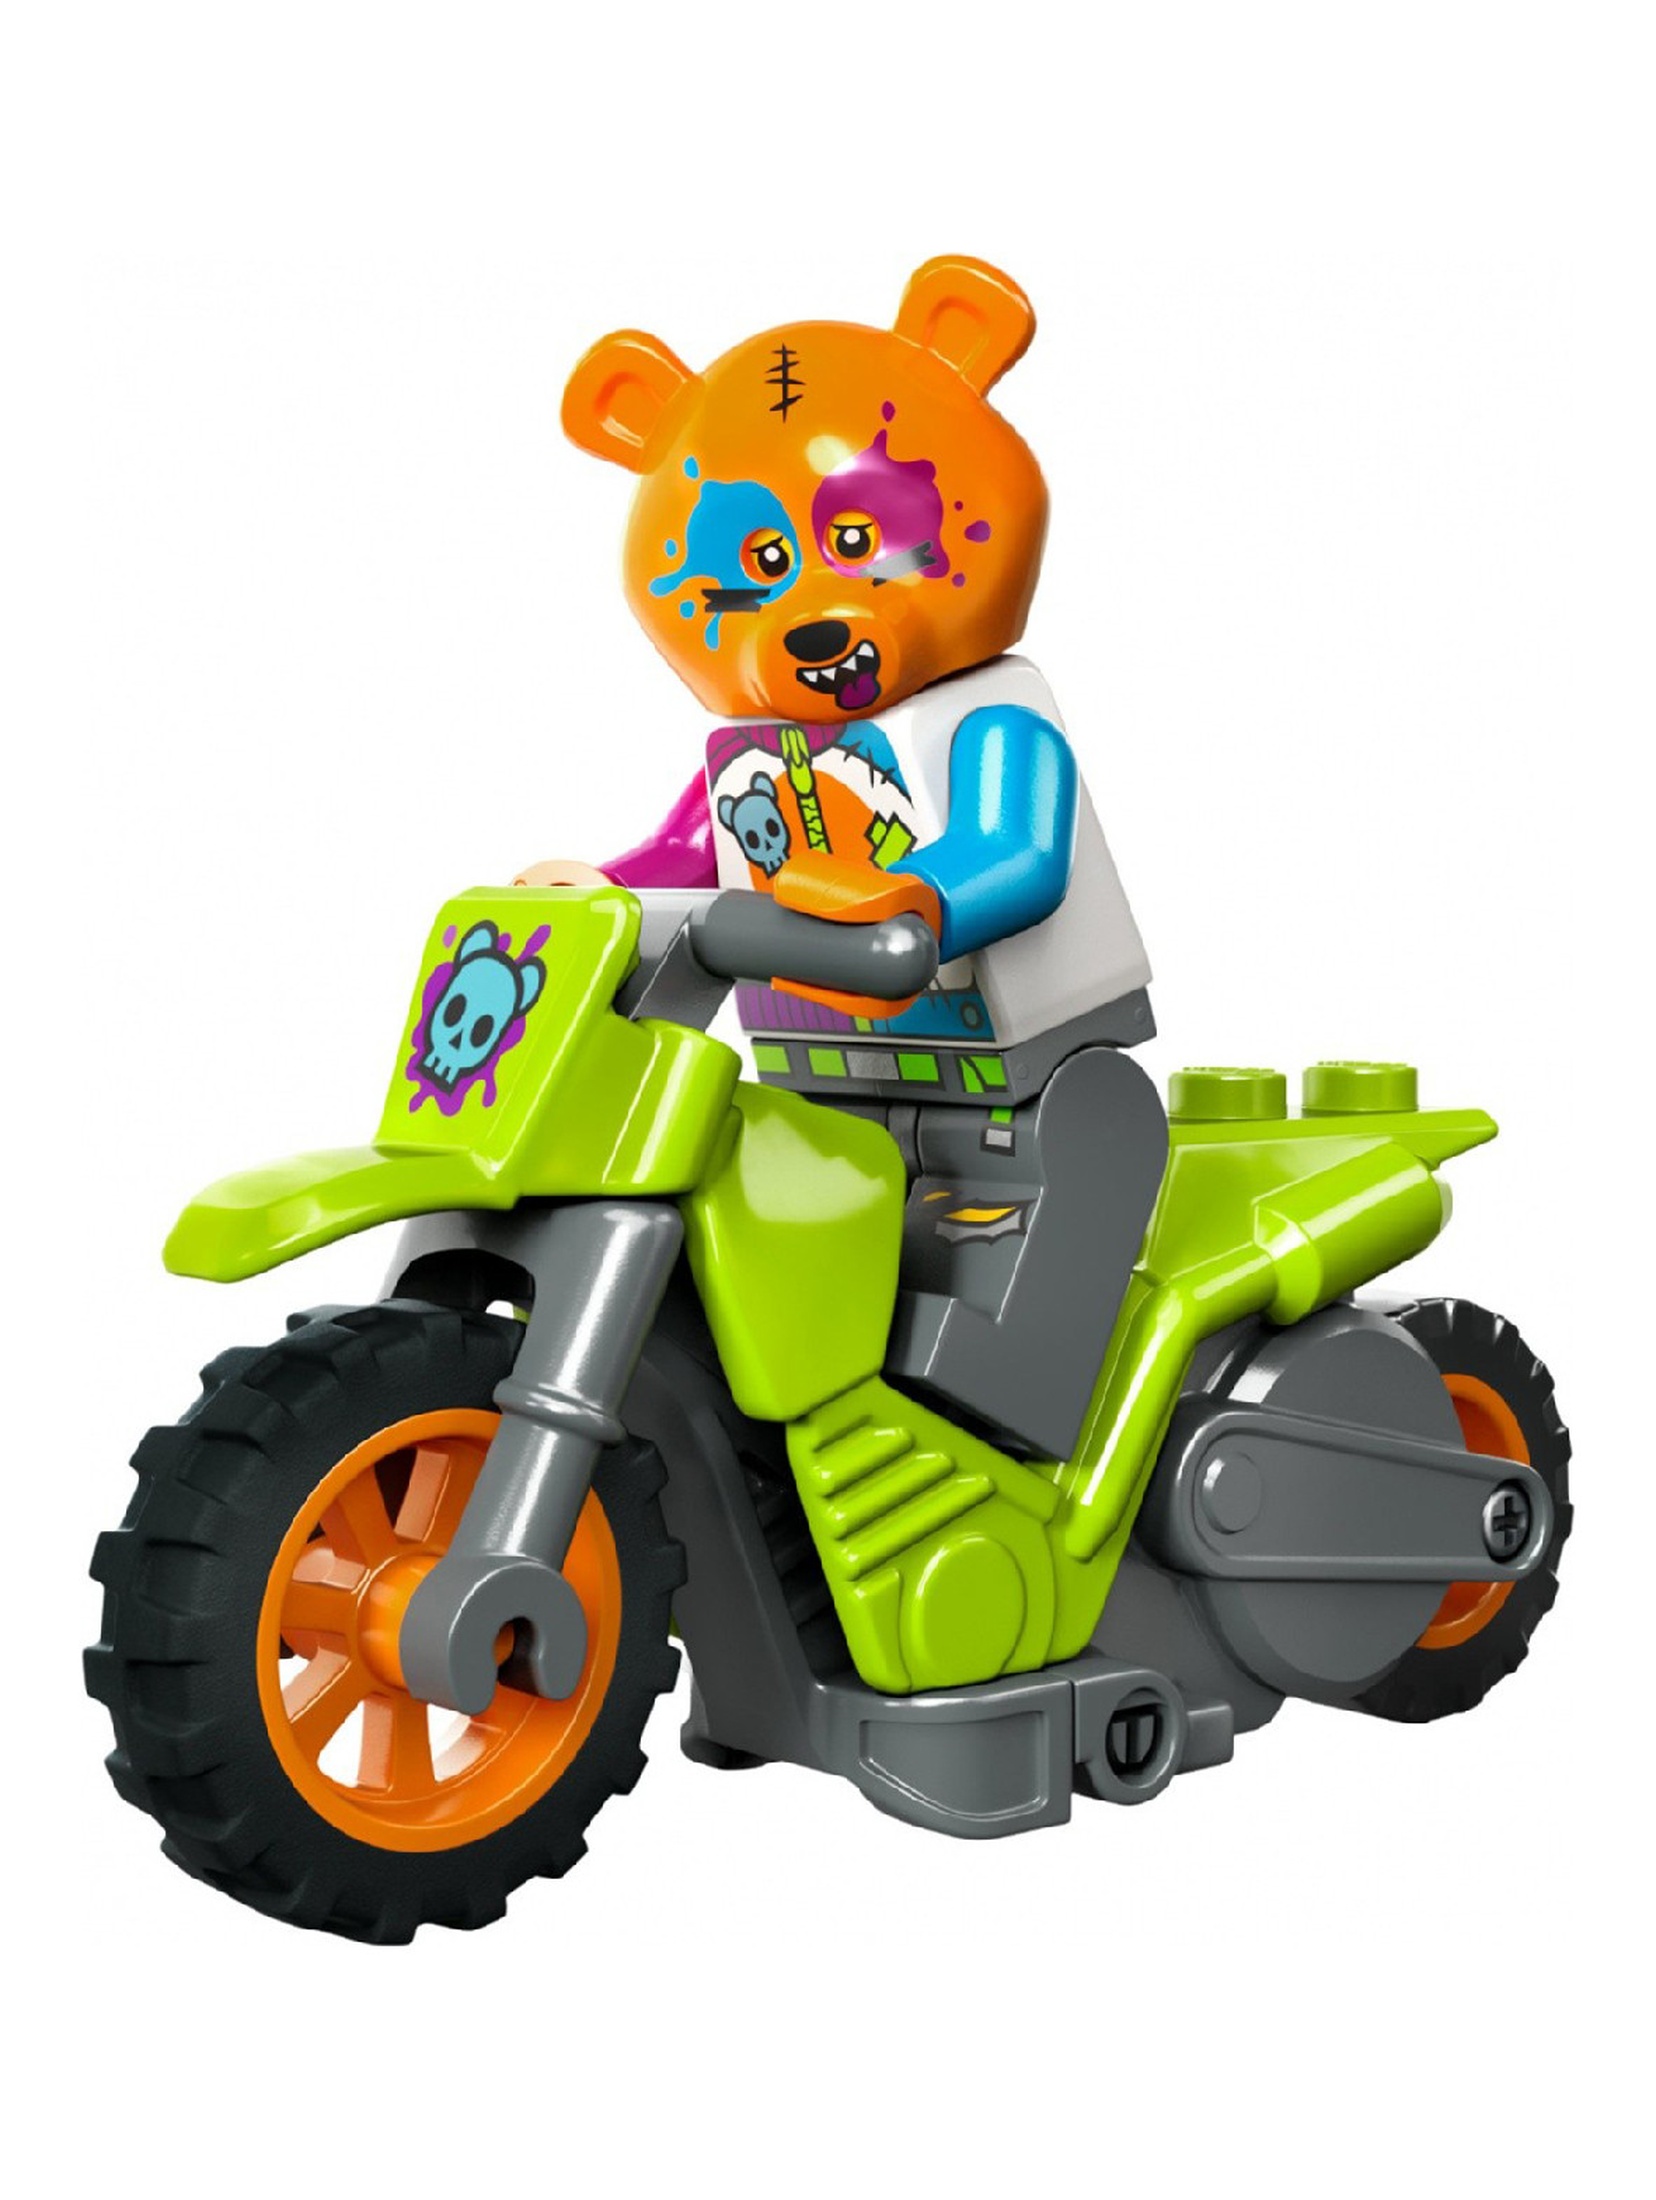 Klocki LEGO City 60356 - Motocykl kaskaderski z niedźwiedziem